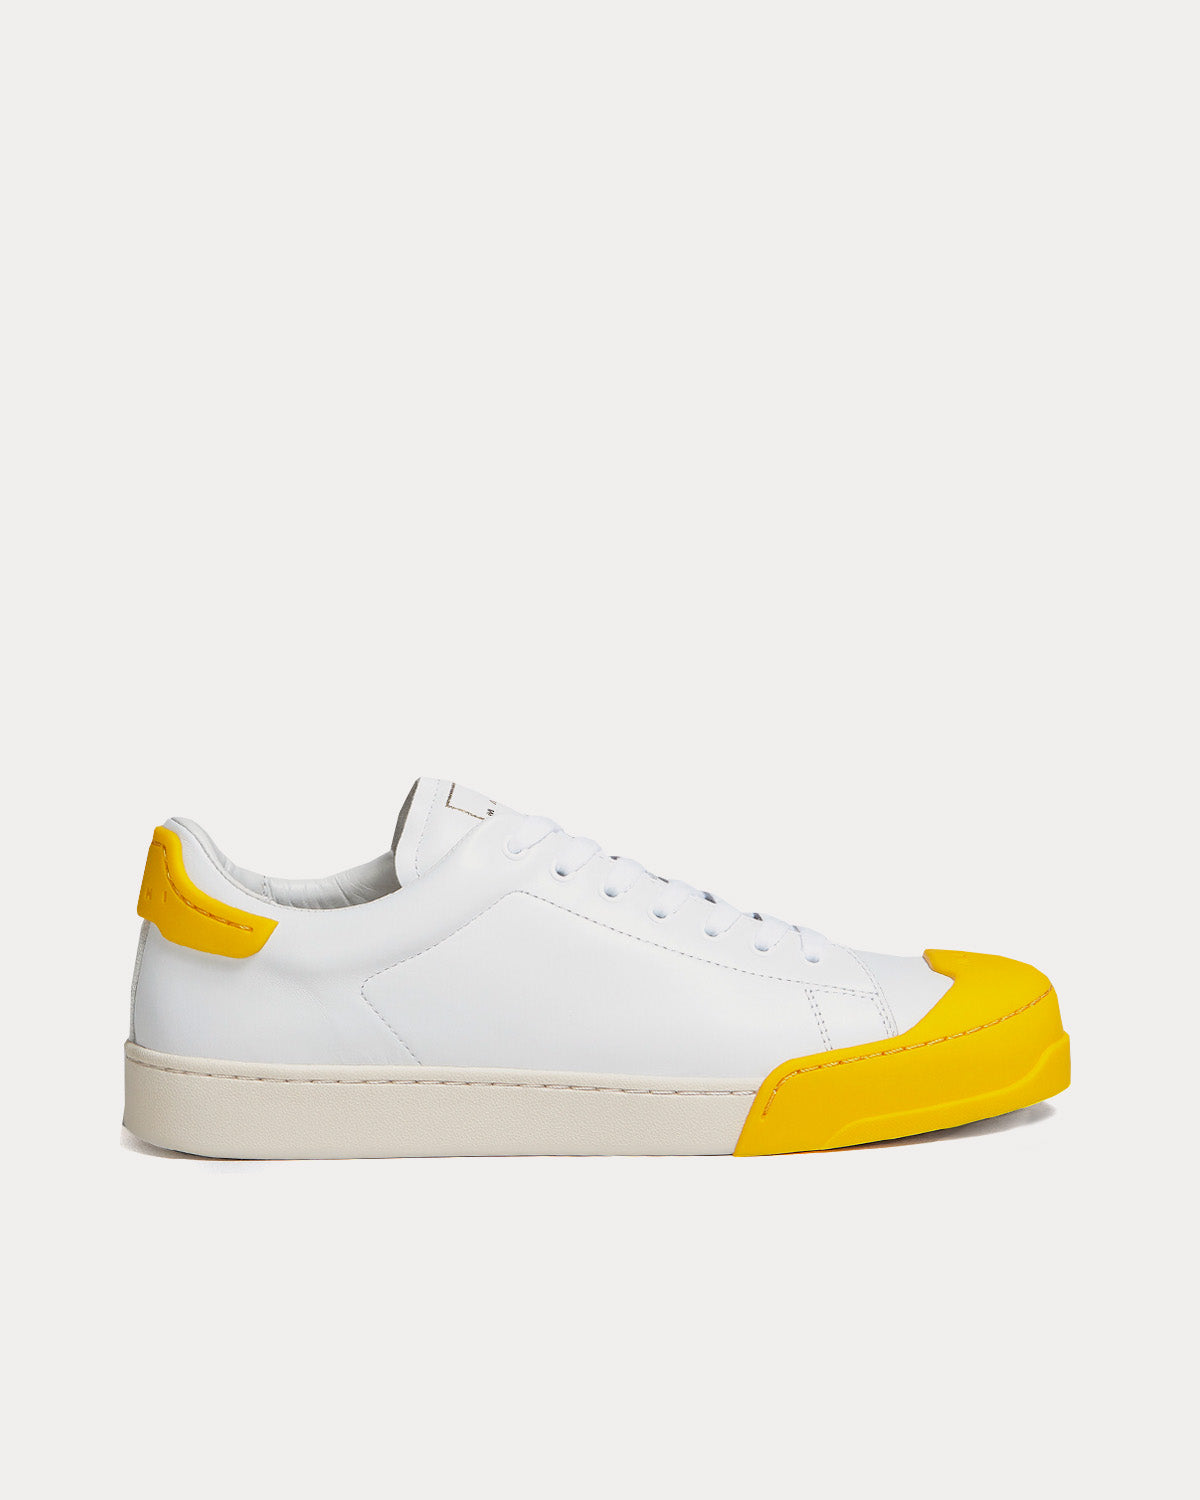 Marni - Dada Bumper White / Yellow Low Top Sneakers